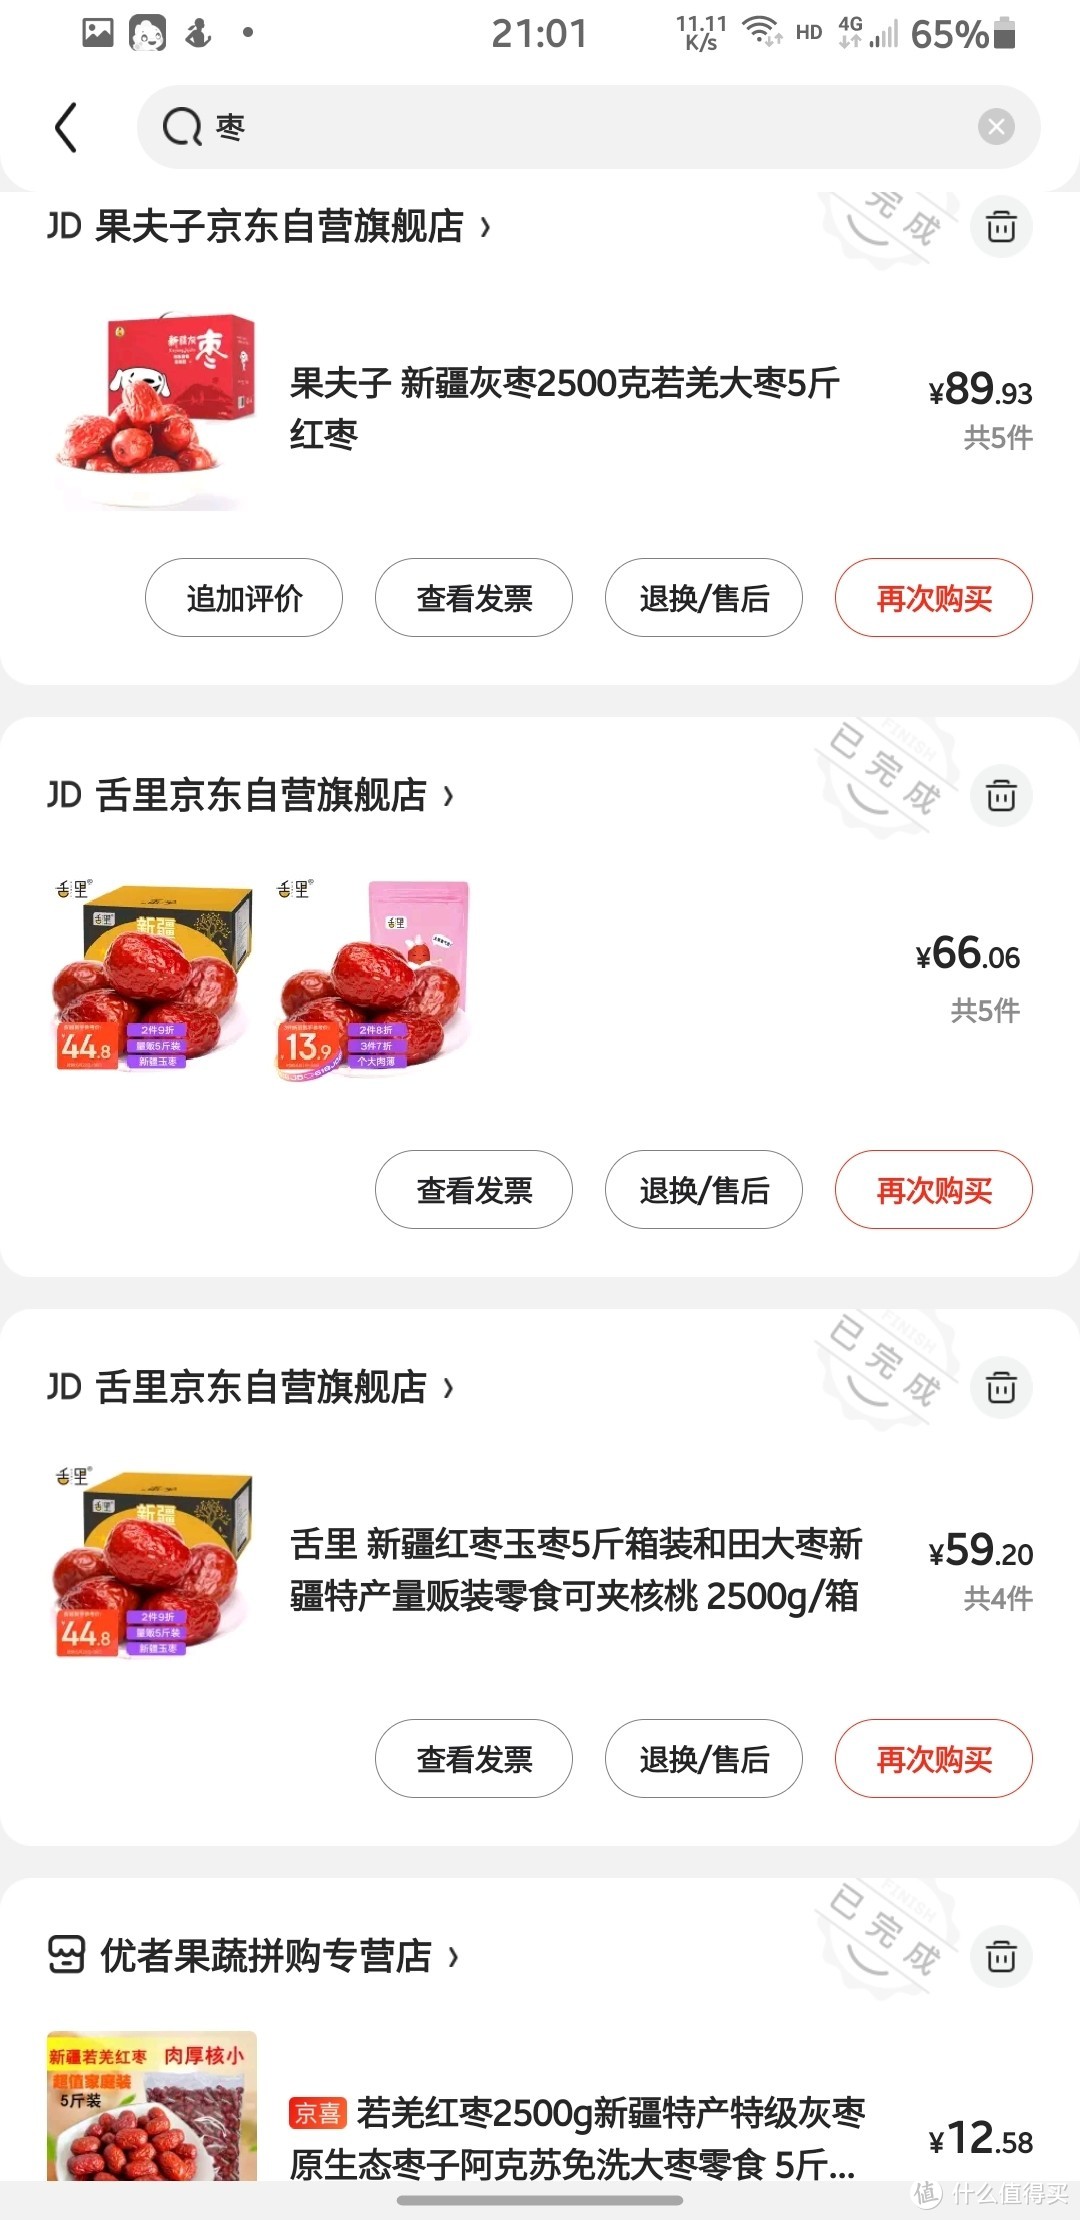 吃了几百斤的红枣爱好者，教你选择哪些品牌红枣便宜又放心